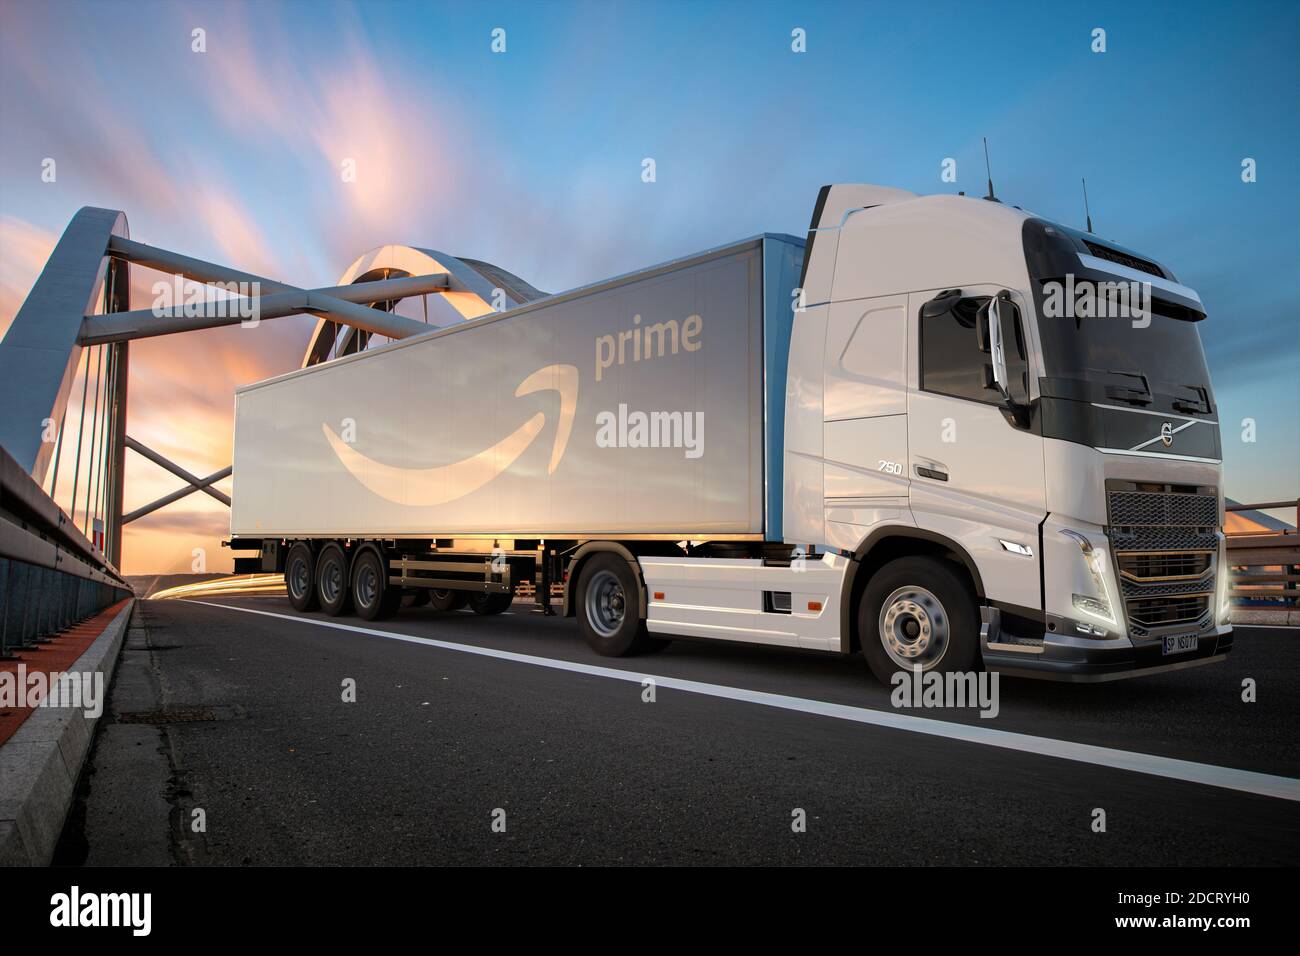 Volvo LKW mit Amazon Prime Logo Anhänger auf der Straße Stockfotografie -  Alamy